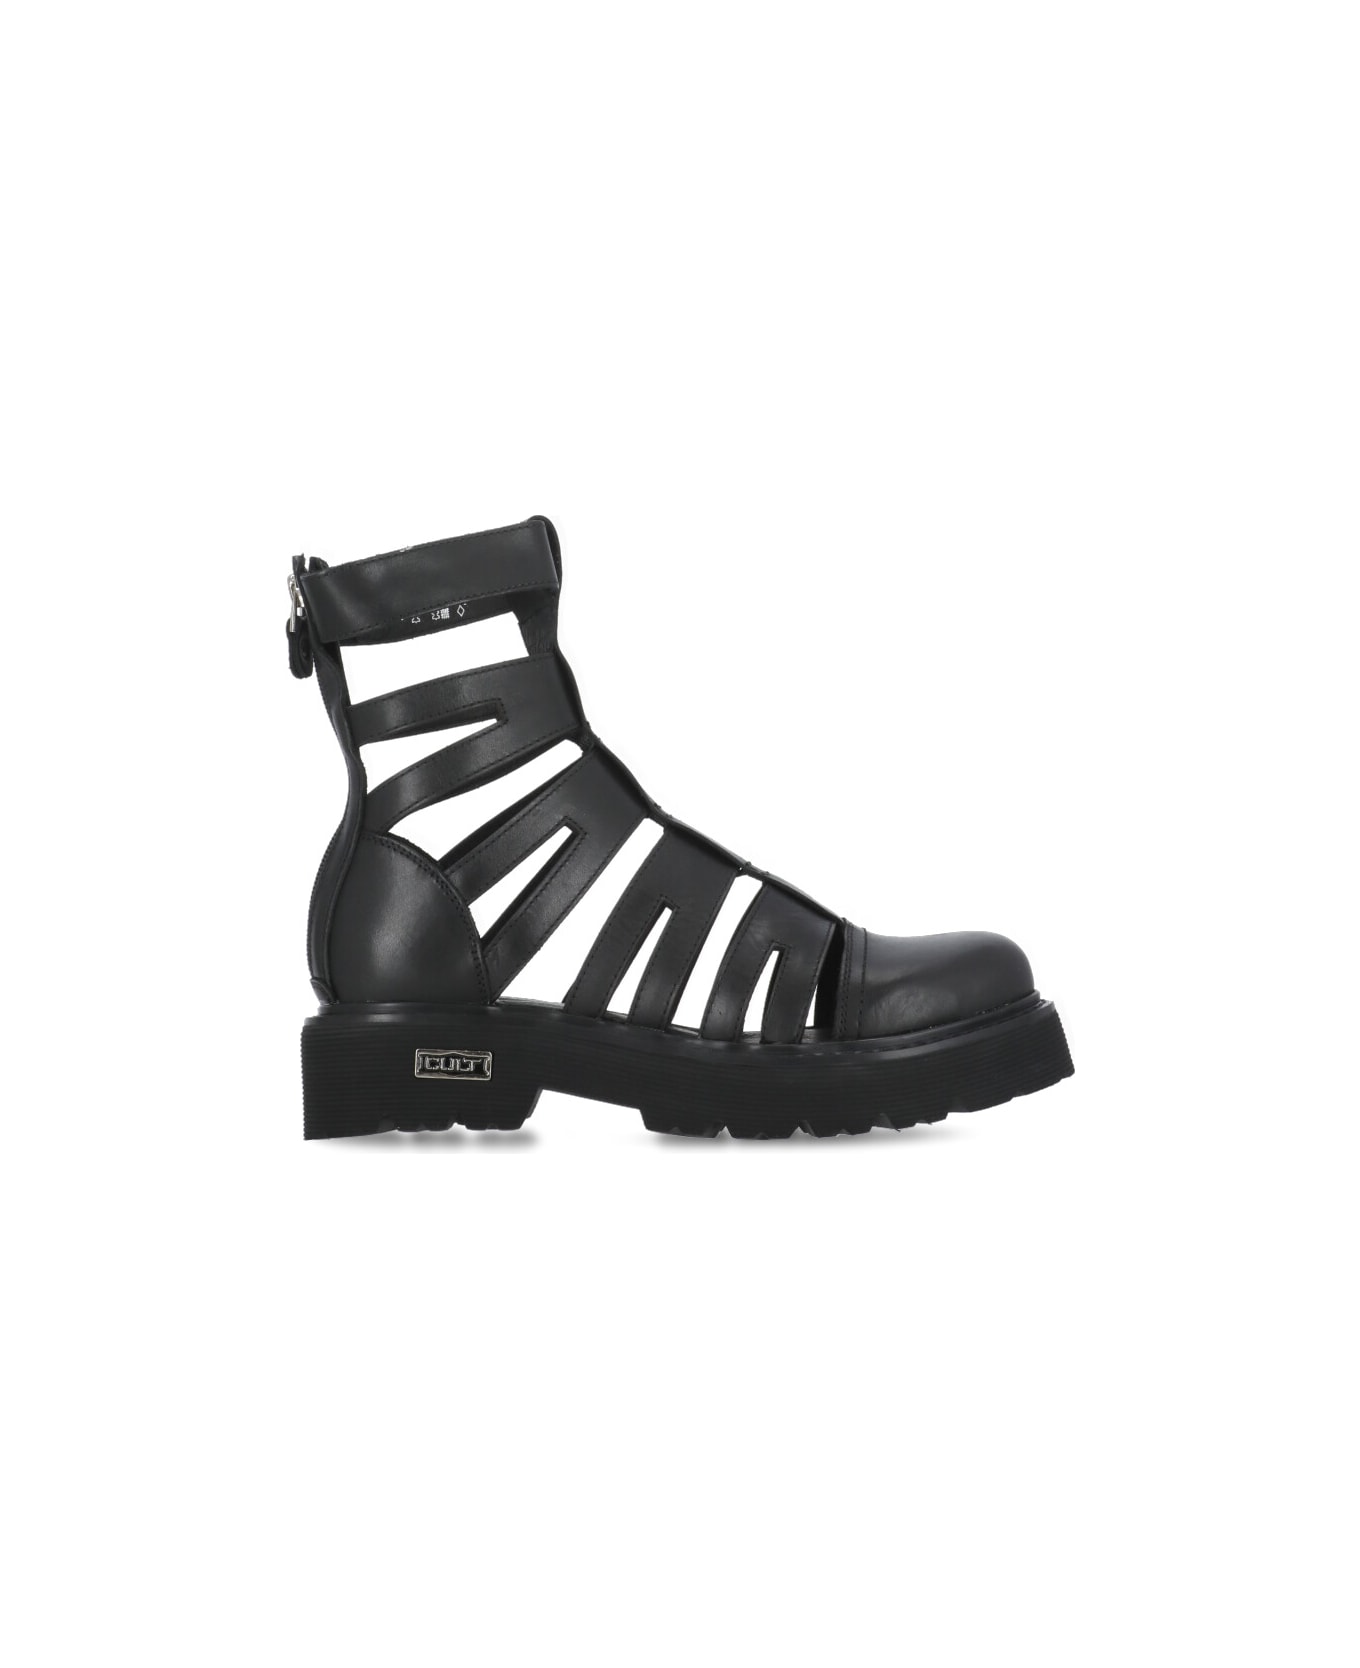 Cult Slash 4209 Boots - Black